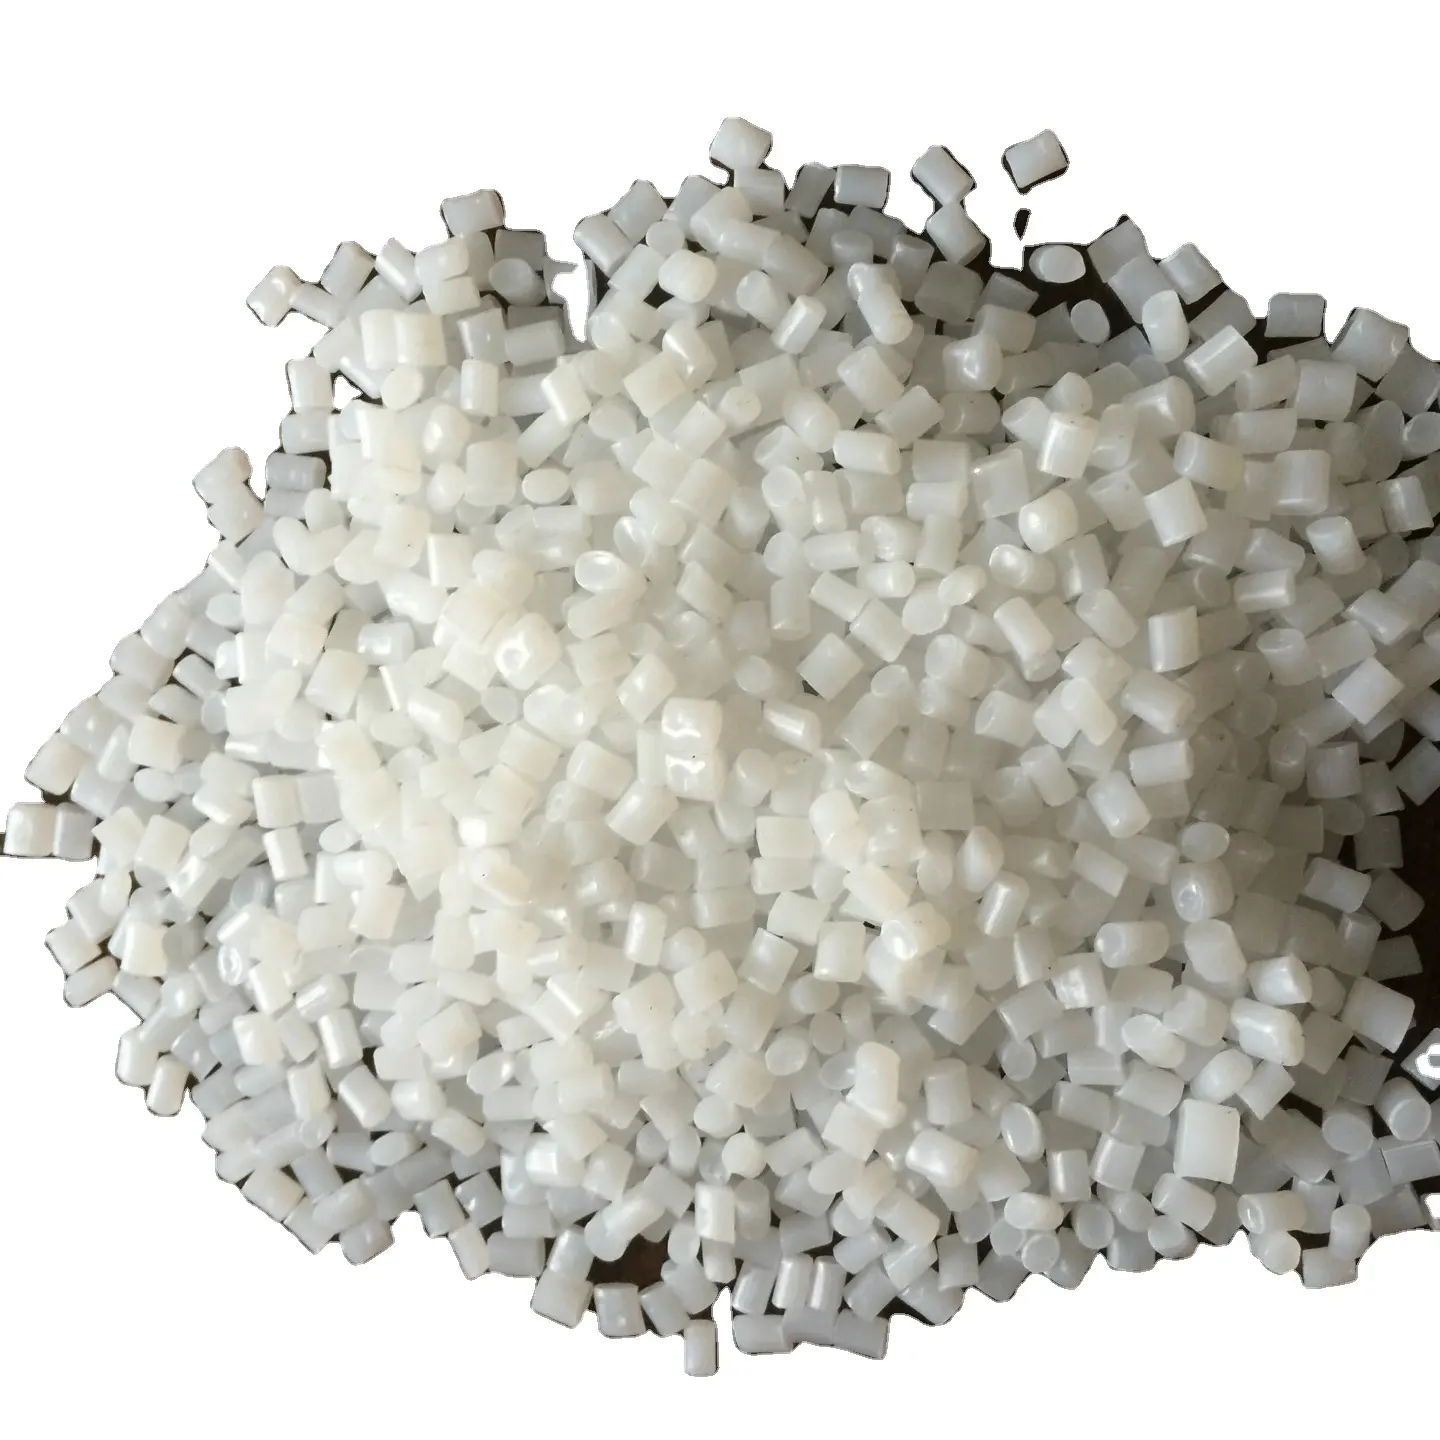 高品質バージン & リサイクルHIPS顆粒/耐衝撃性ポリスチレン樹脂/ヒップ顆粒バージン